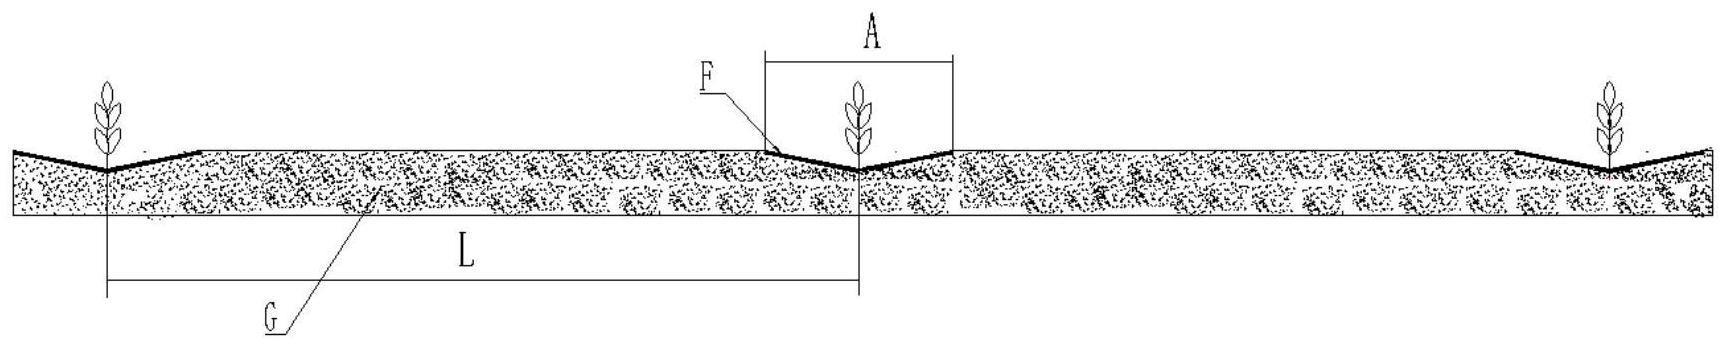 干旱半干旱草原沙地牧草栽培油沙覆盖工艺的制作方法